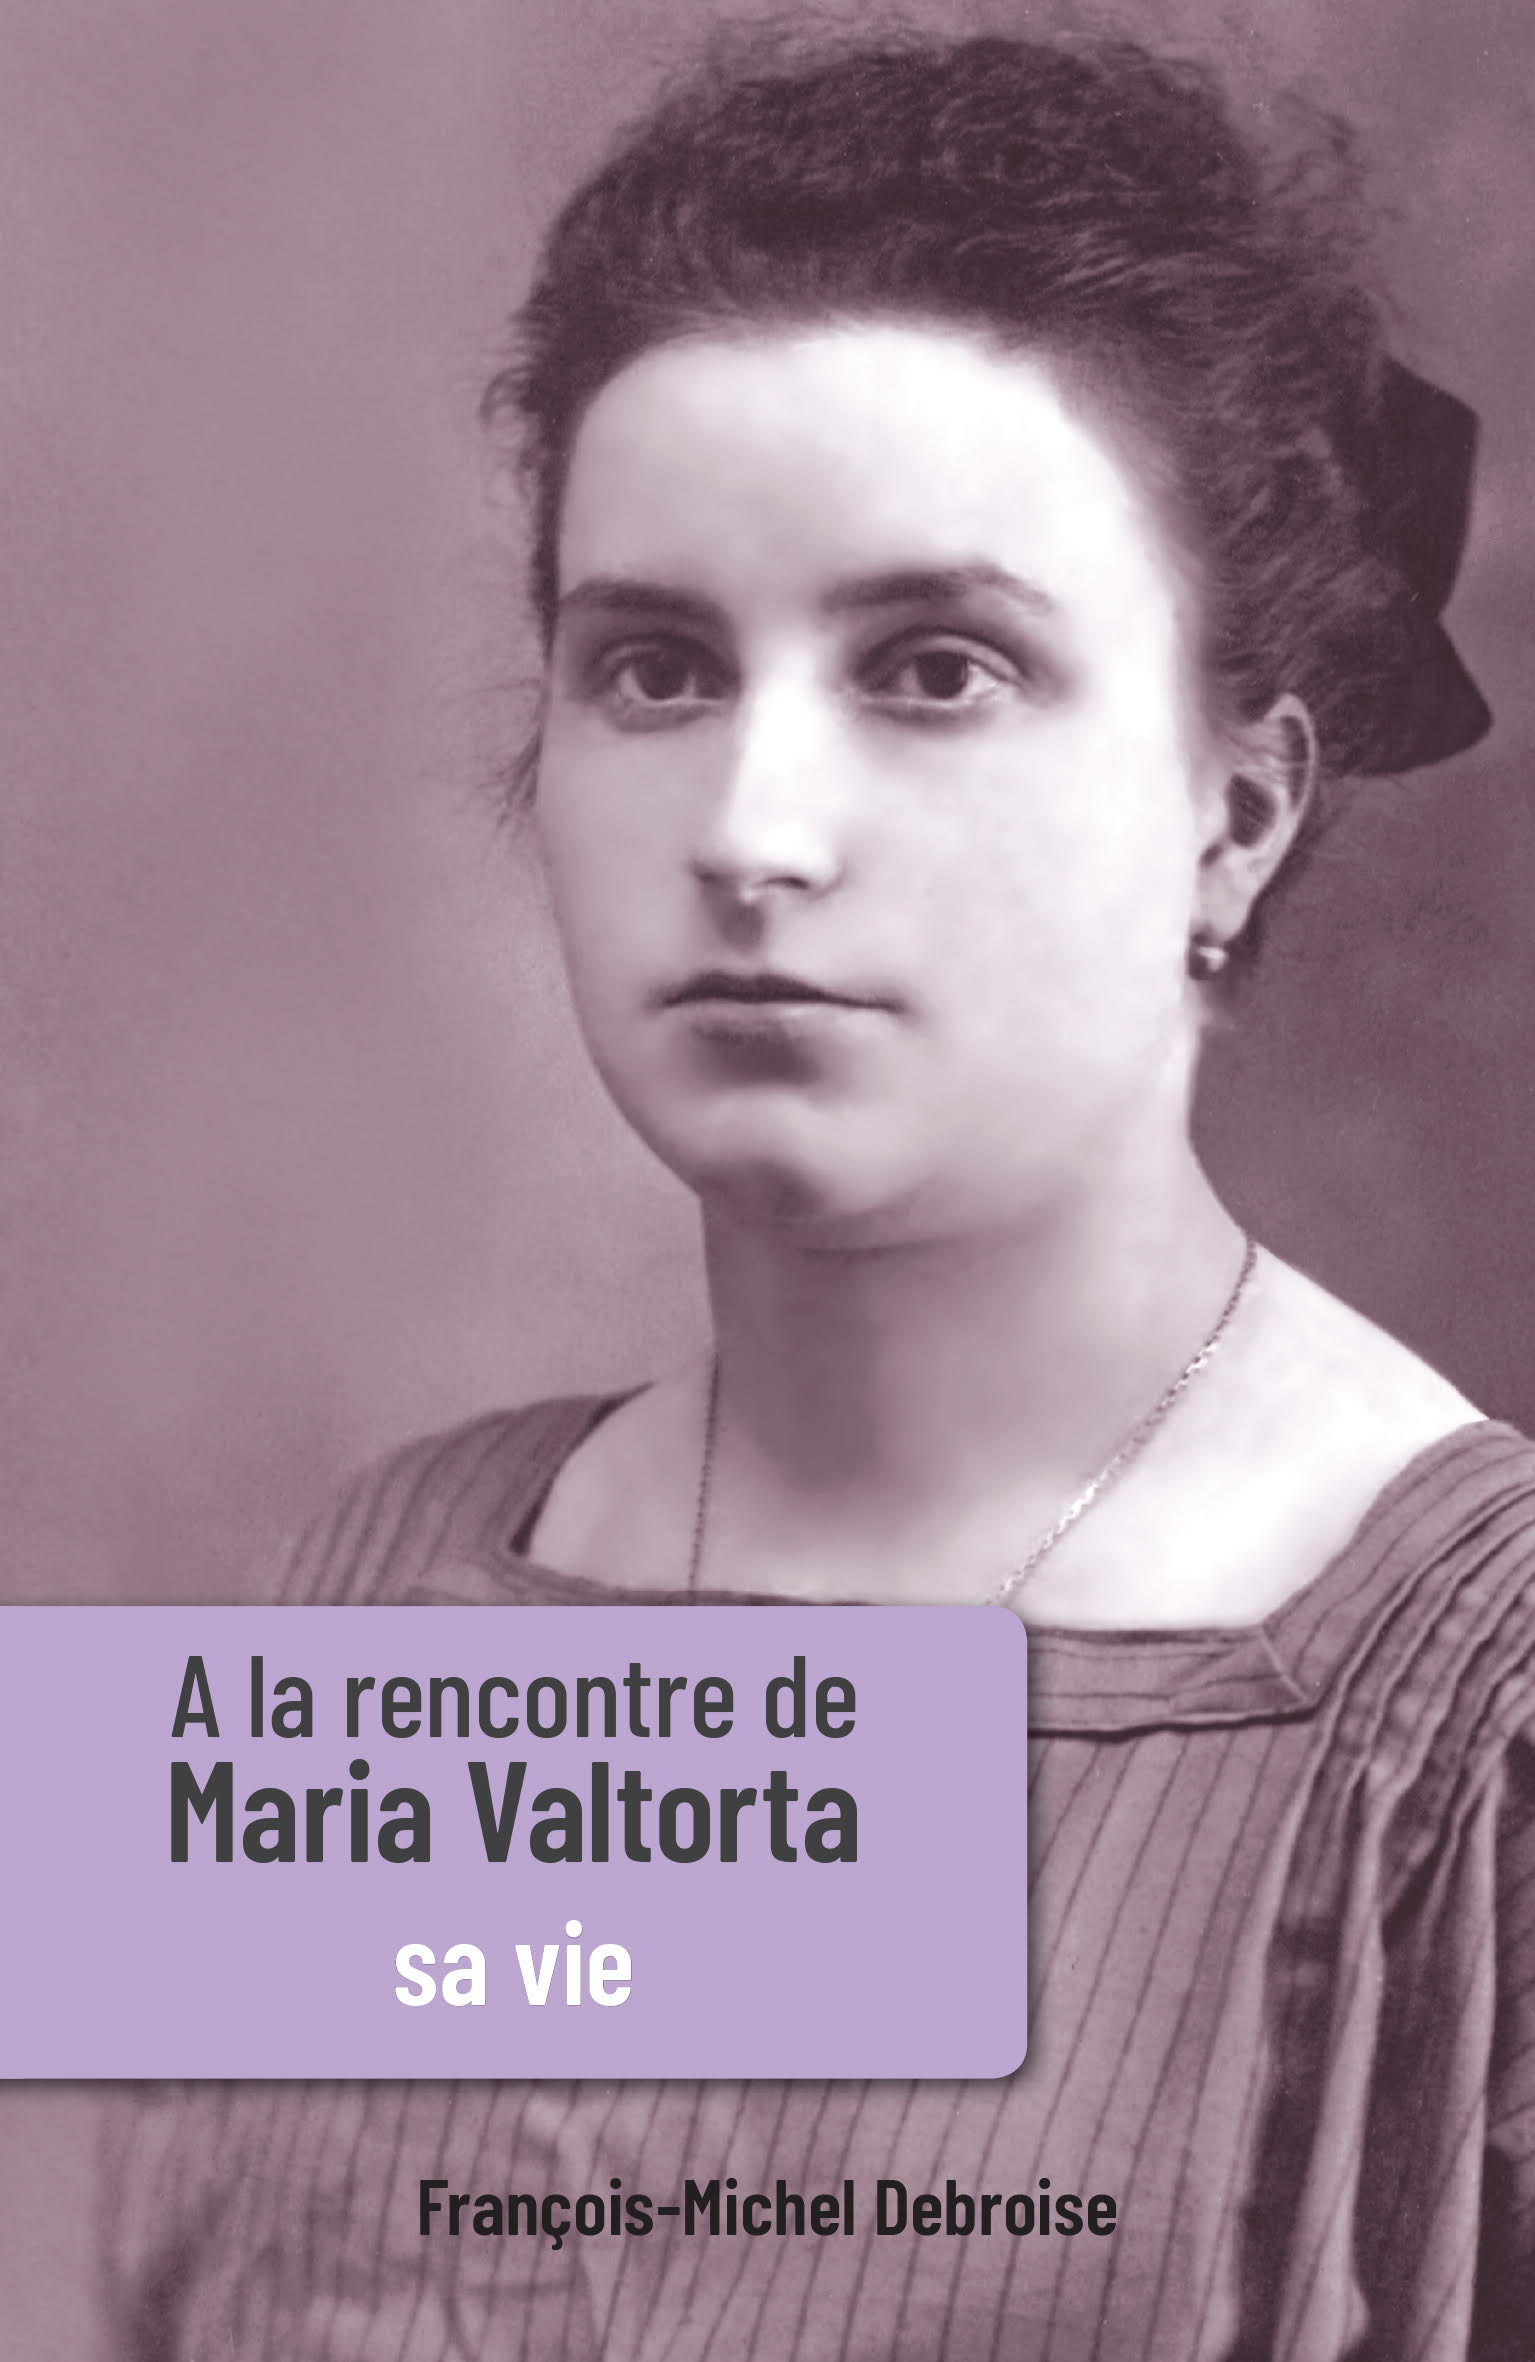 Deux nouveaux ouvrages de la Fondation Maria Valtorta !